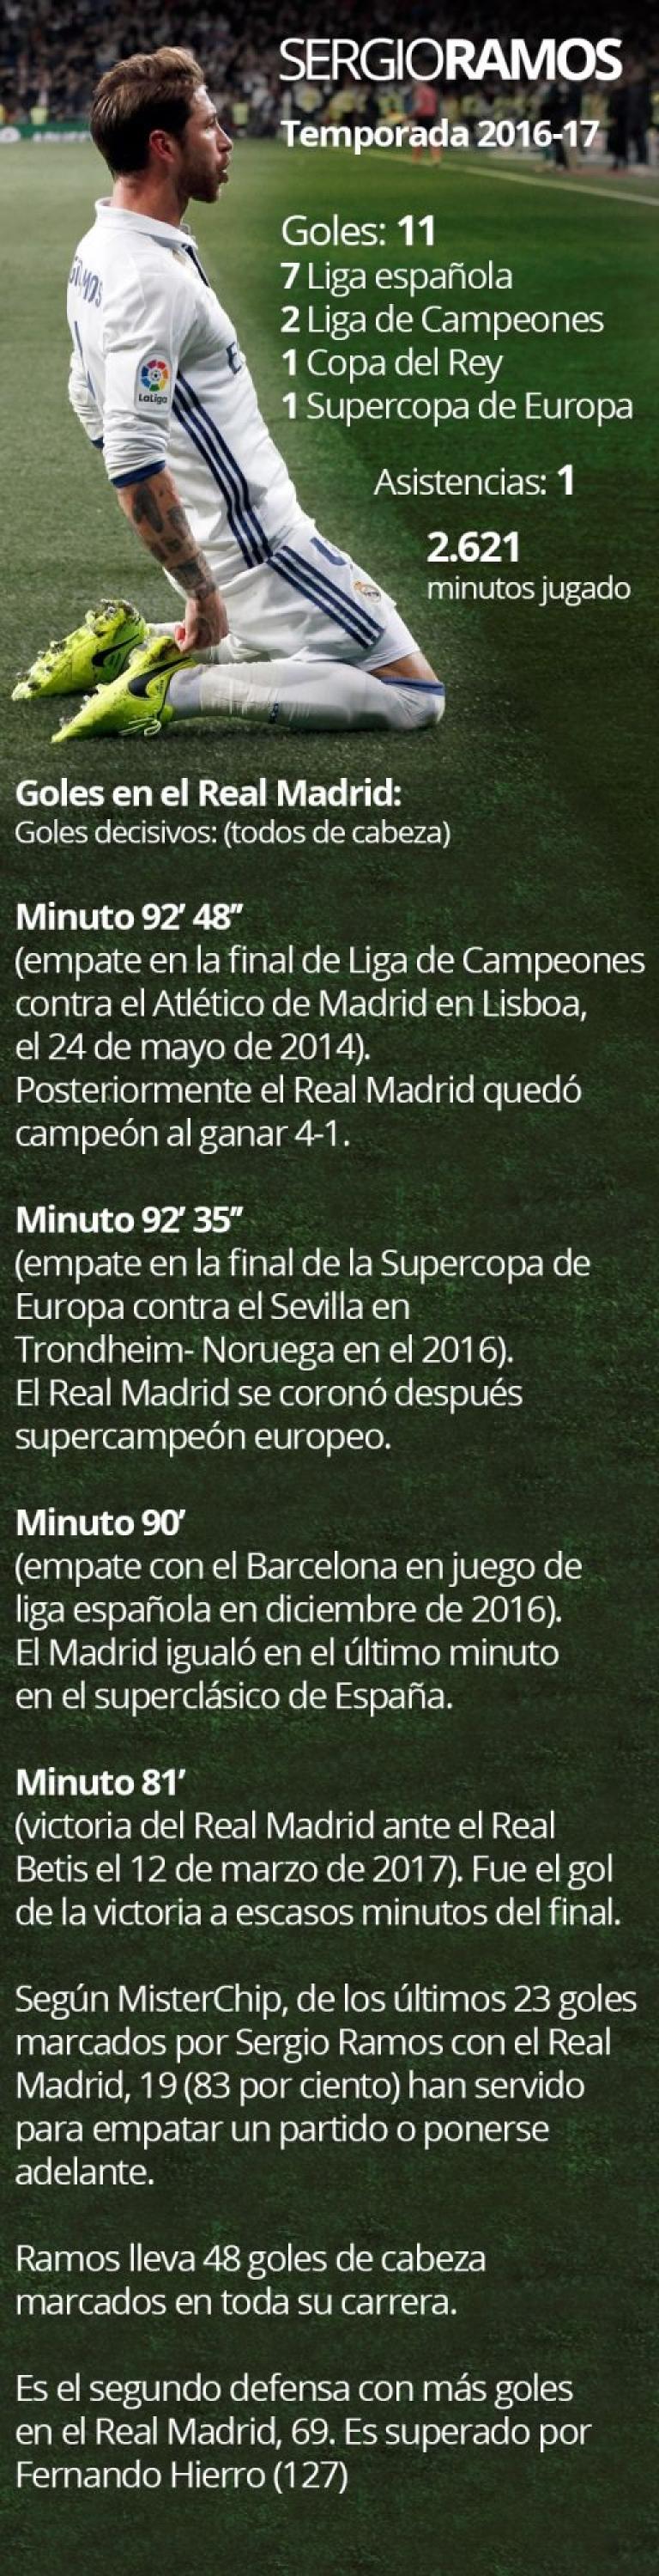 Los números de Sergio Ramos en el Real Madrid.